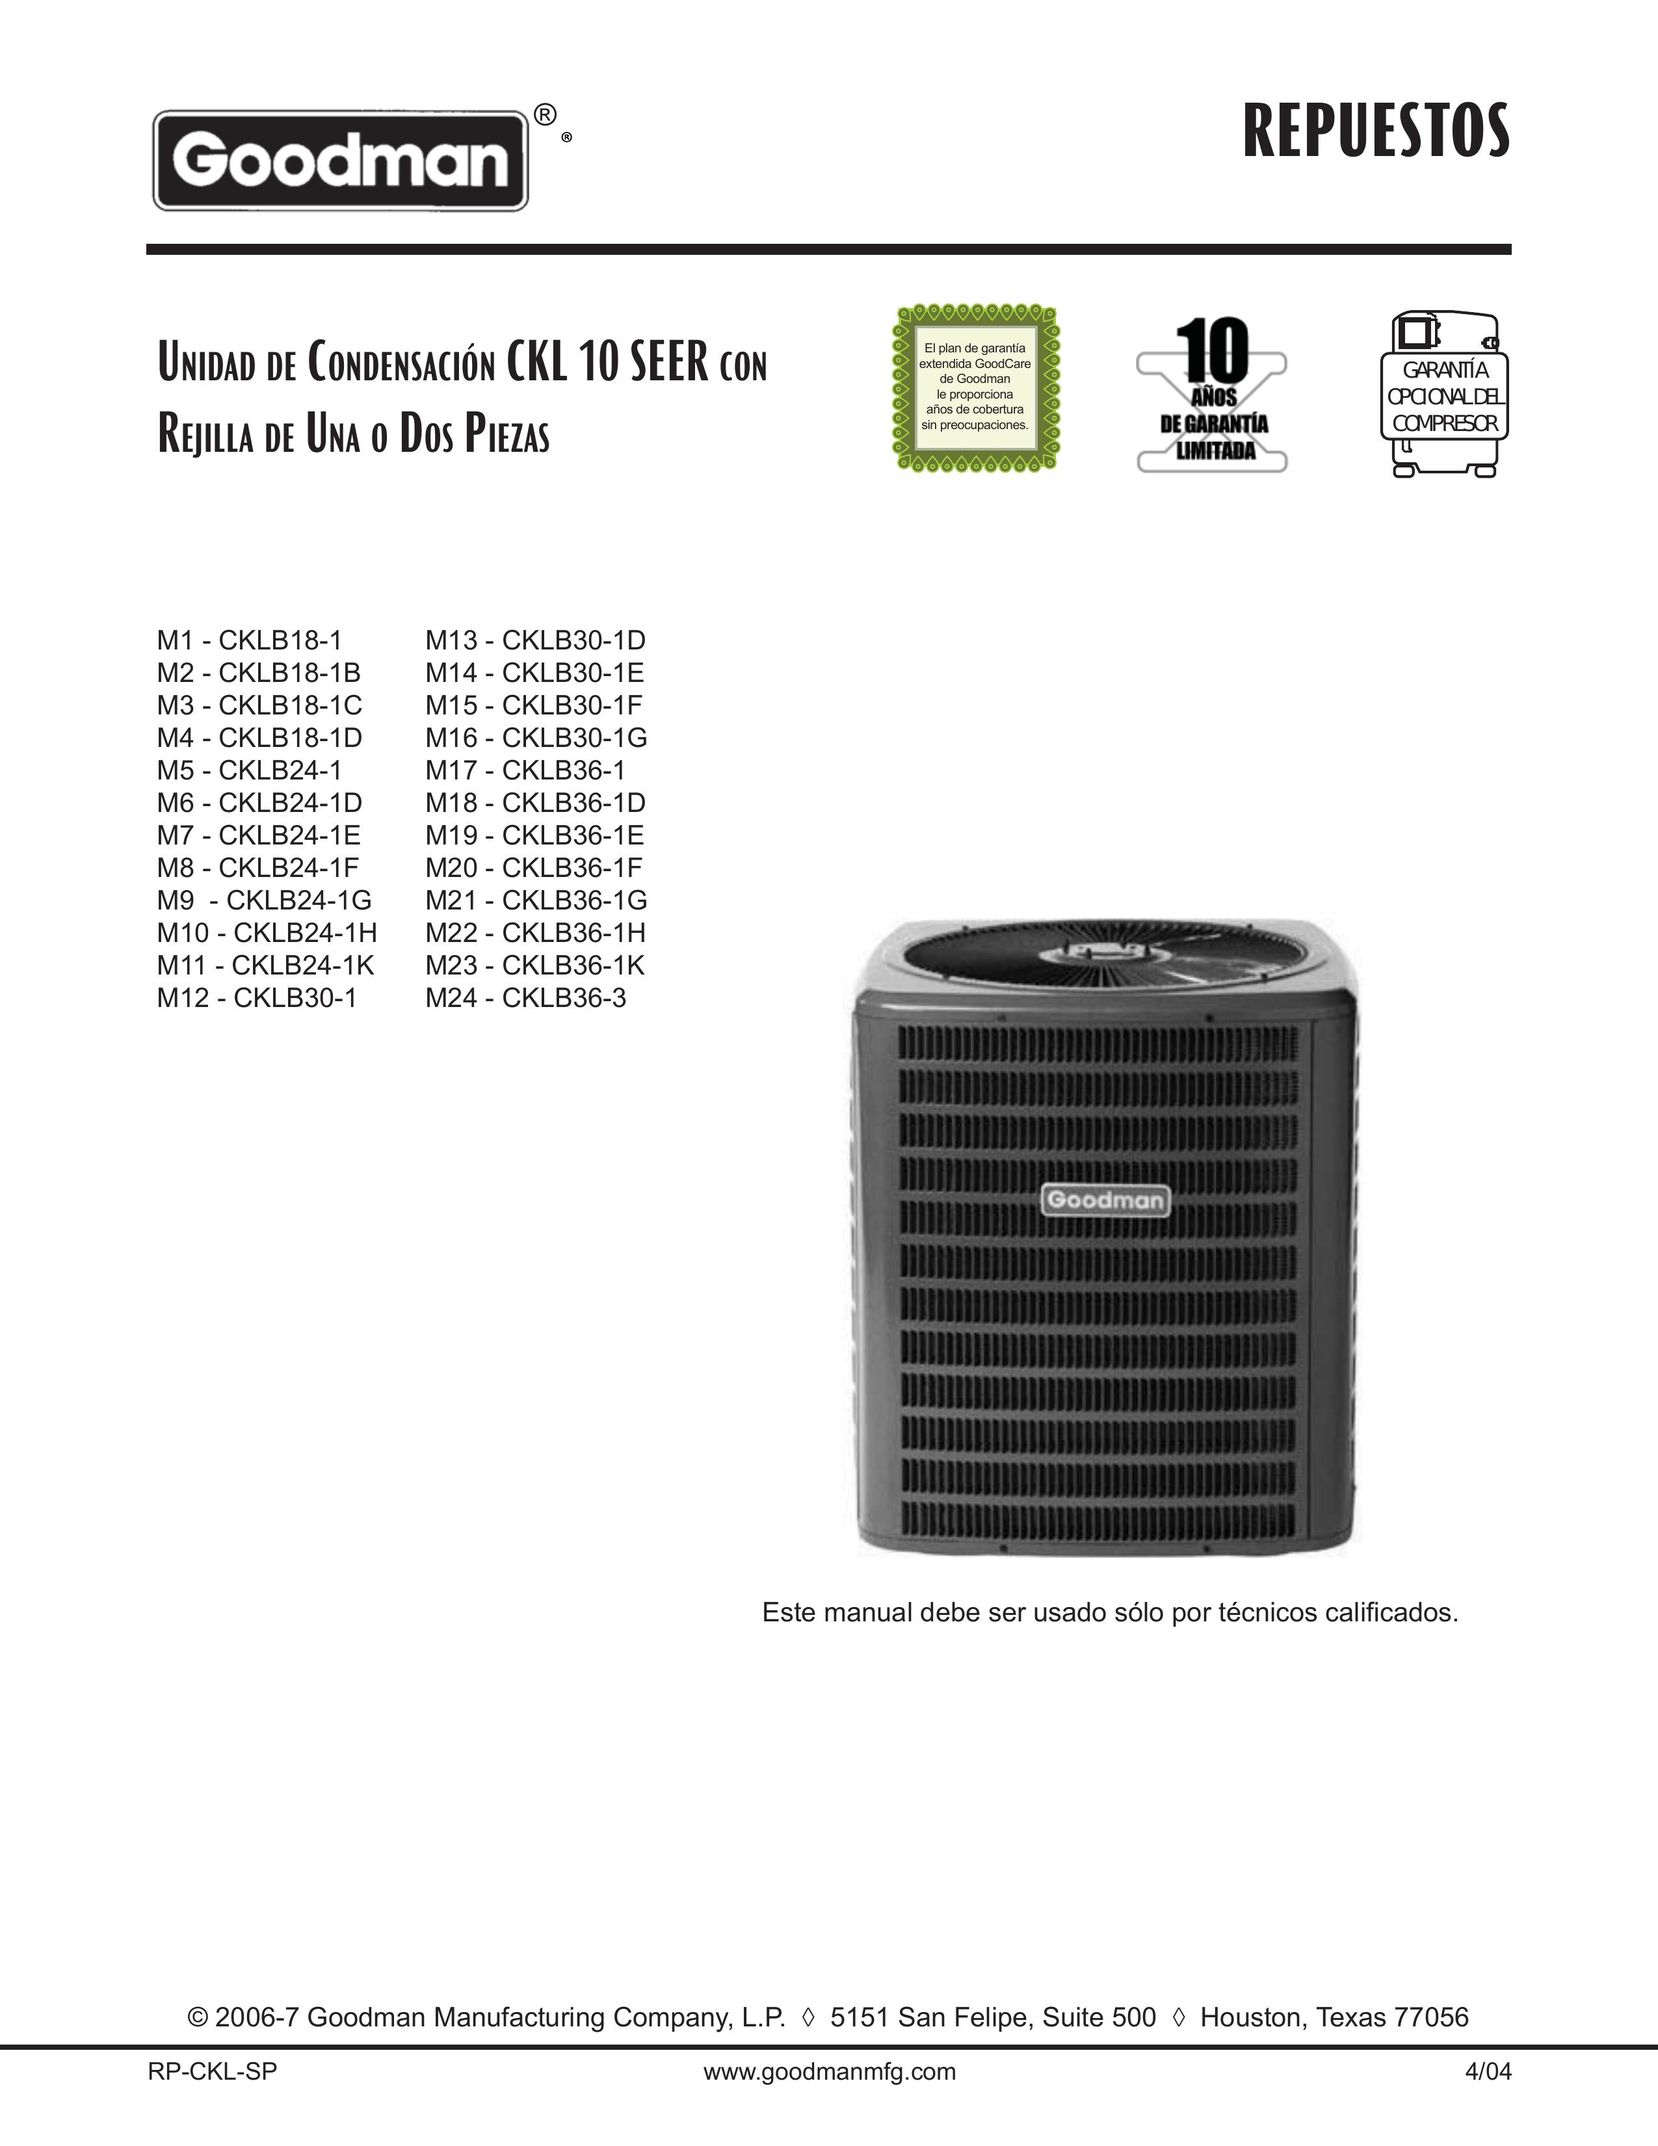 Goodman Mfg CKLB30-1D Air Conditioner User Manual